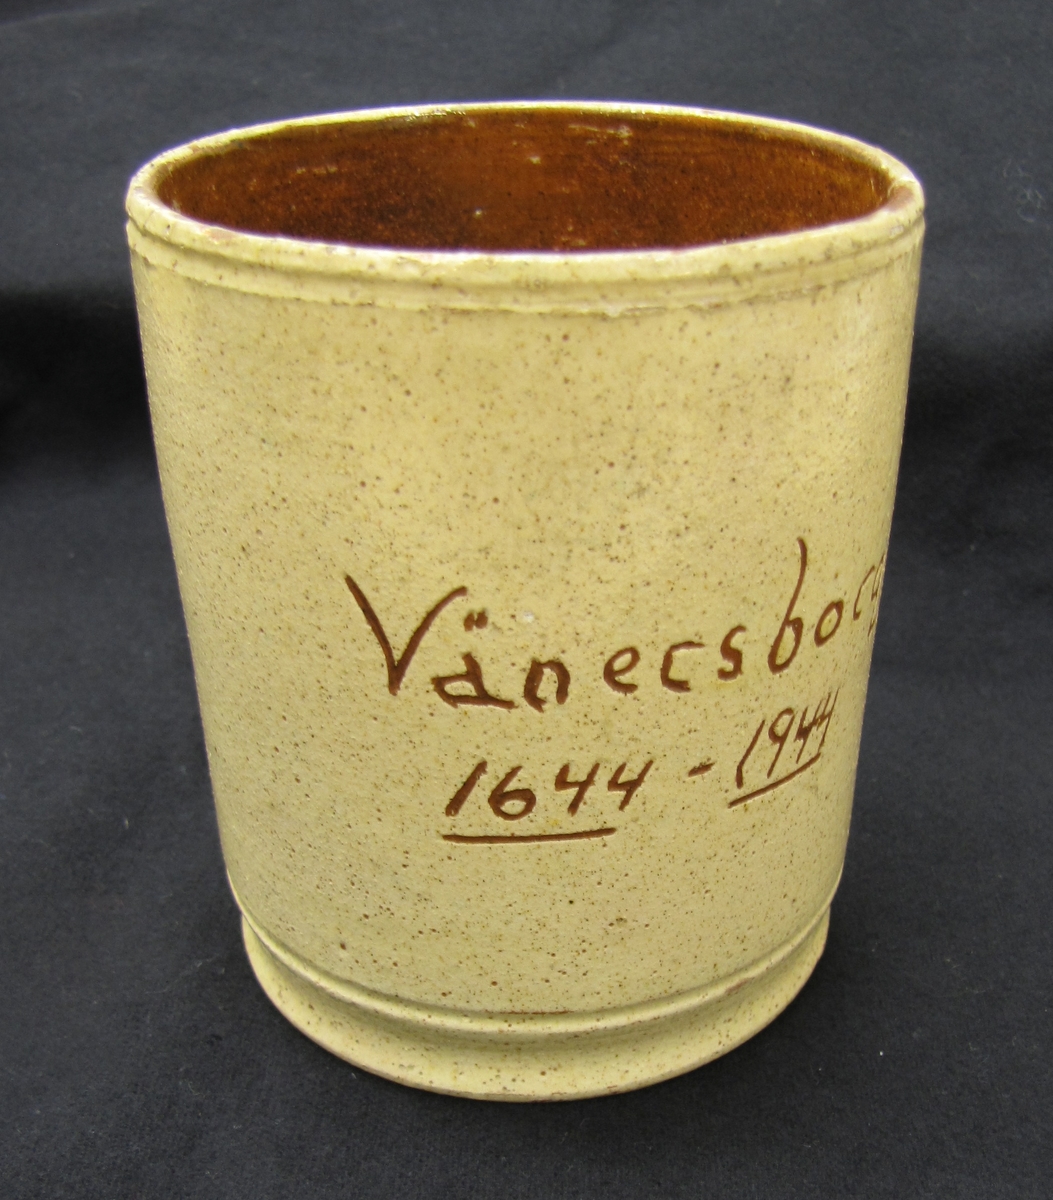 Keramikmugg med hänkel. Cylindrisk. Av keramik. Gul glasyr utvändigt med skriften "Vänersborg 1644 - 1944". Invändigt, brun glasyr.